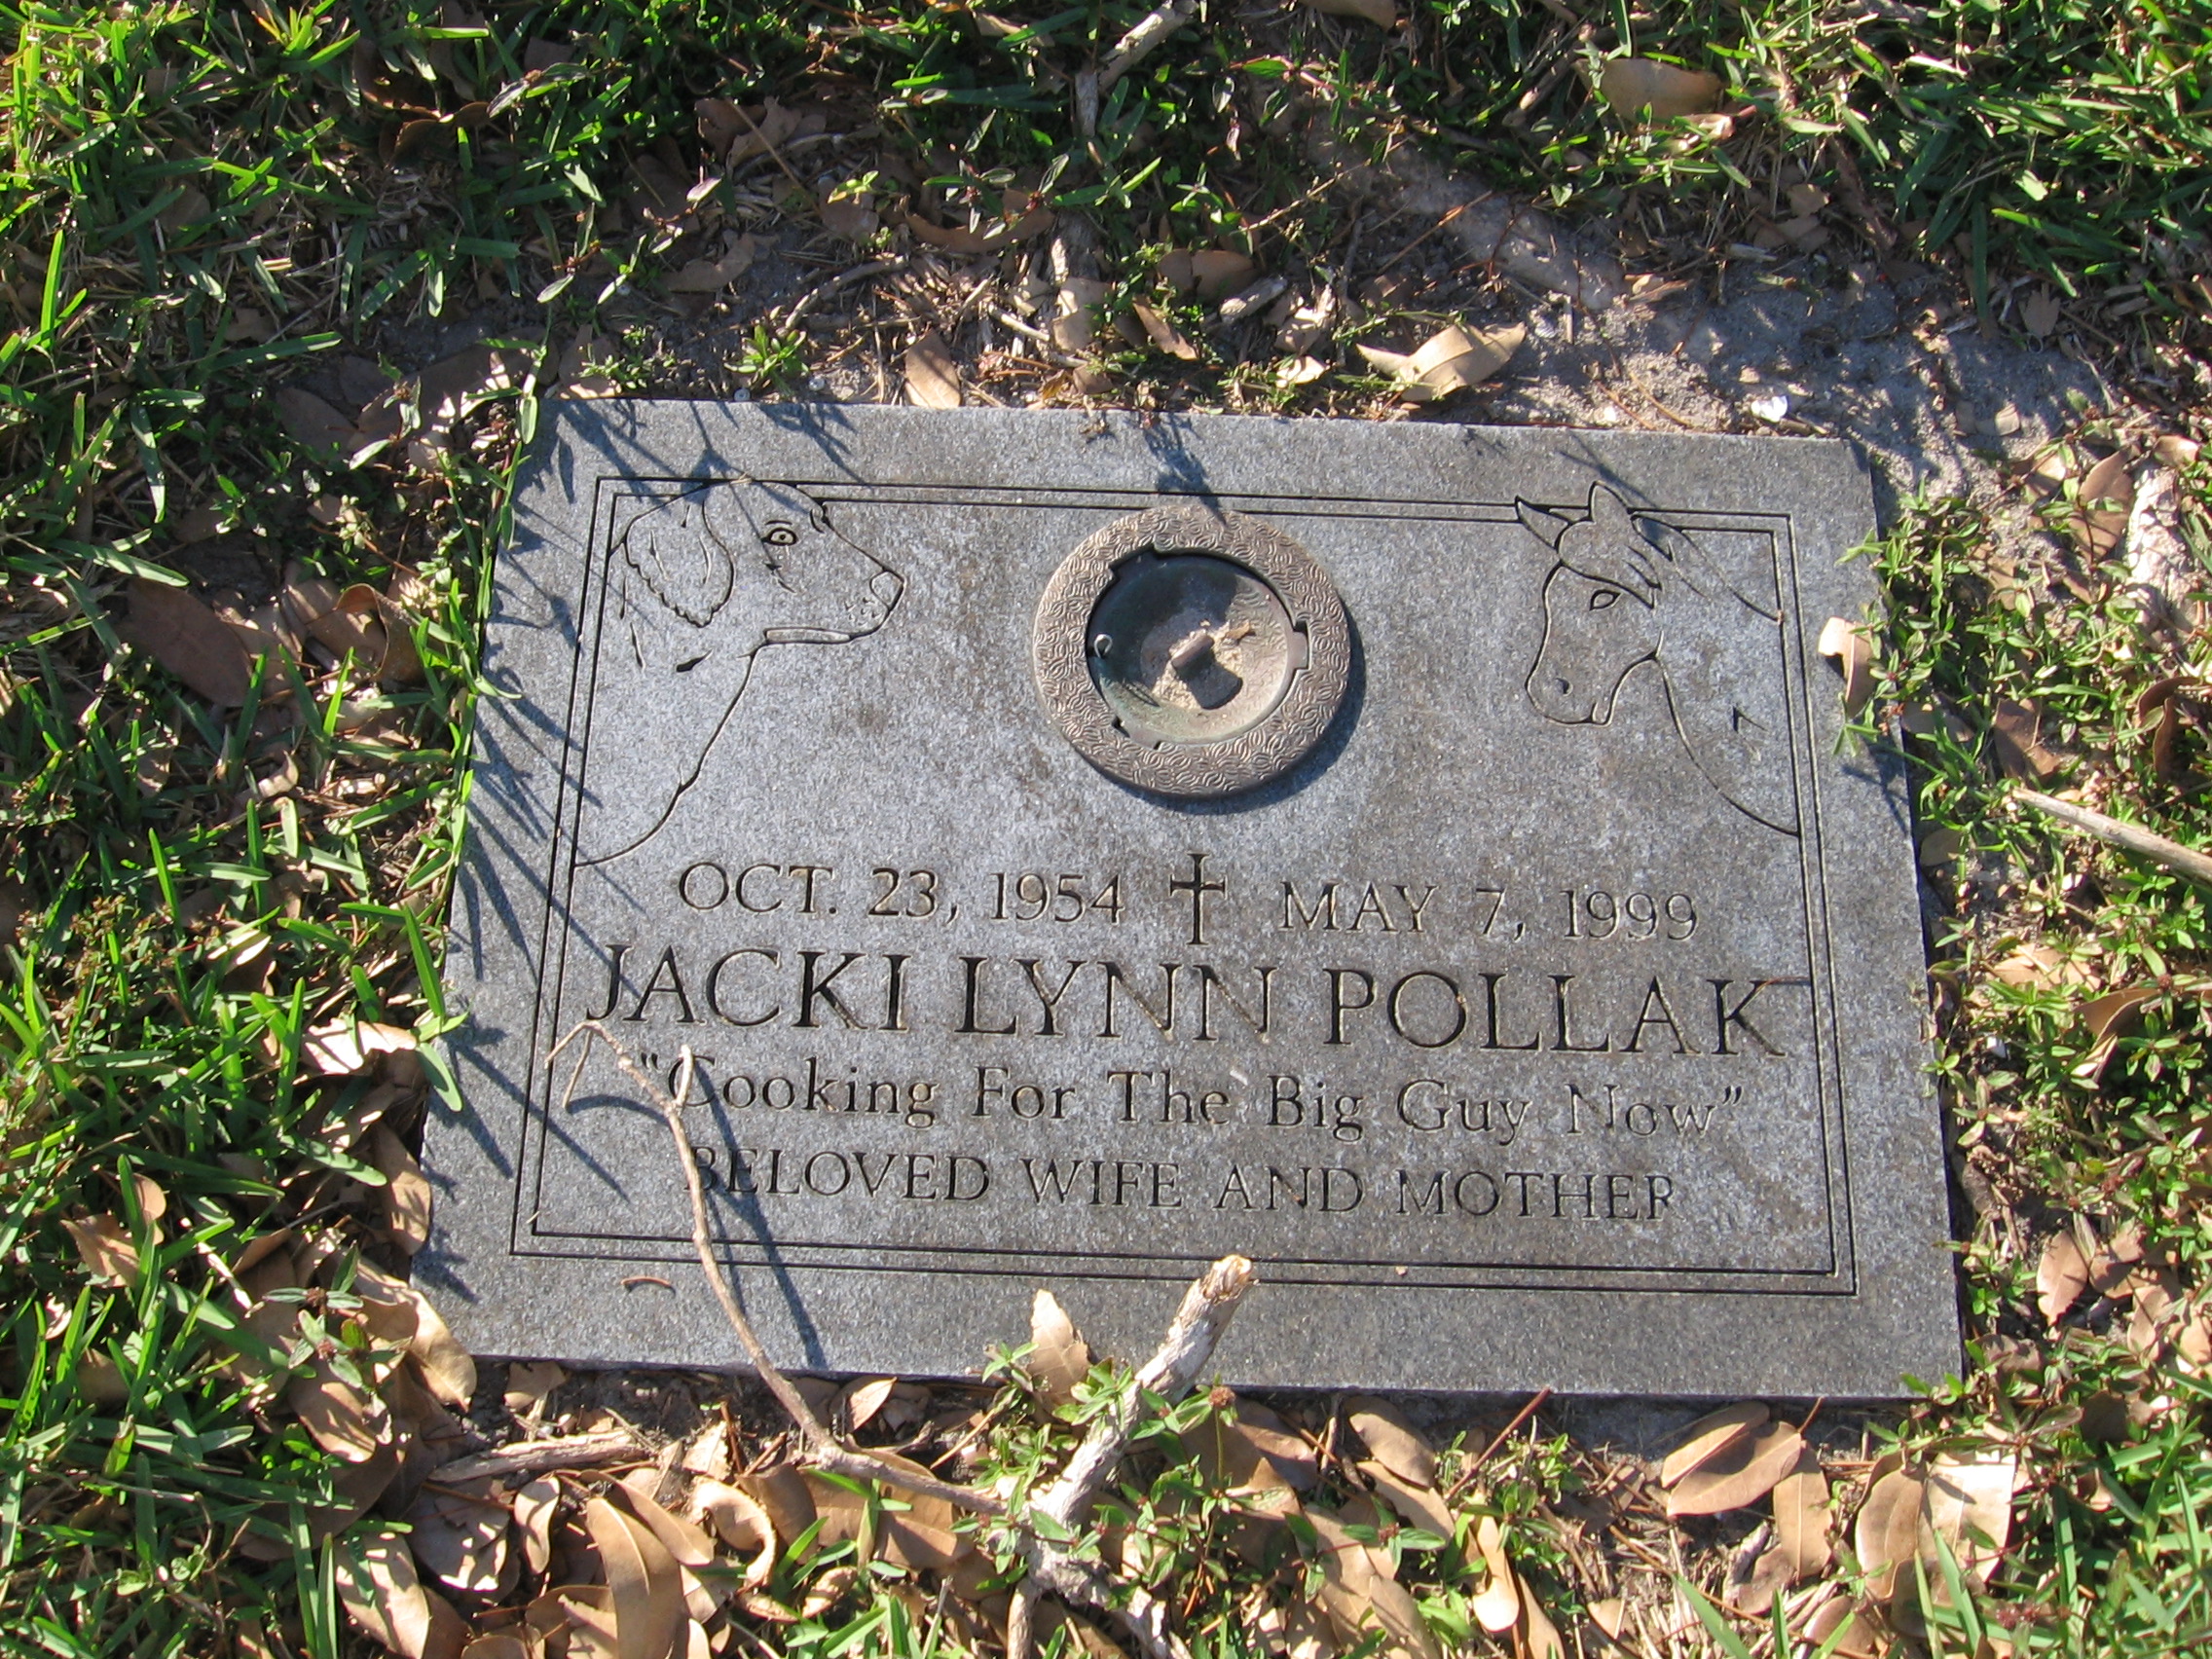 Jacki Lynn Pollak